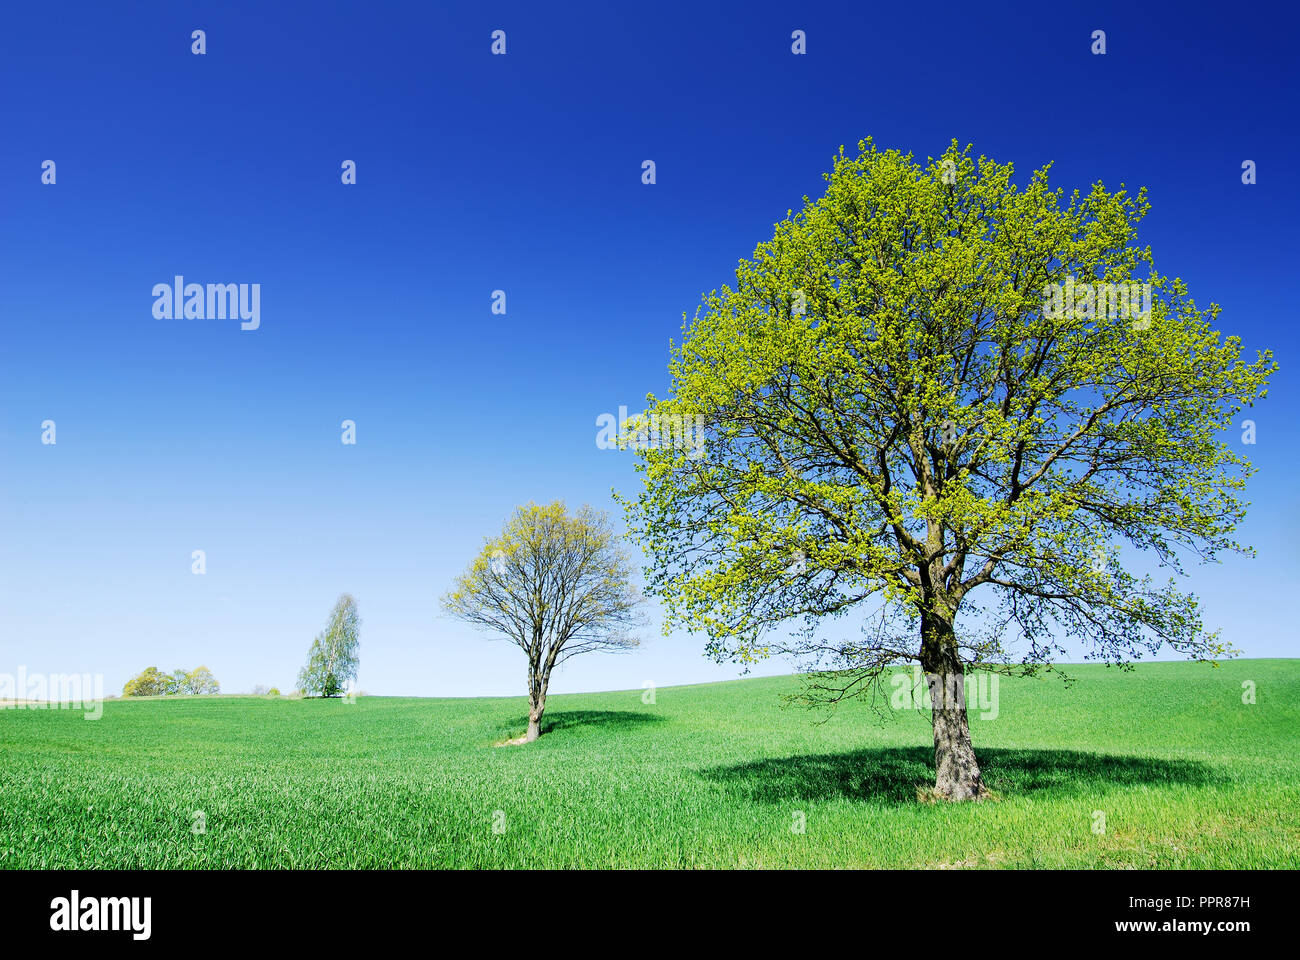 Paesaggio, lonely alberi tra campi verdi, cielo blu e nuvole bianche in background Foto Stock